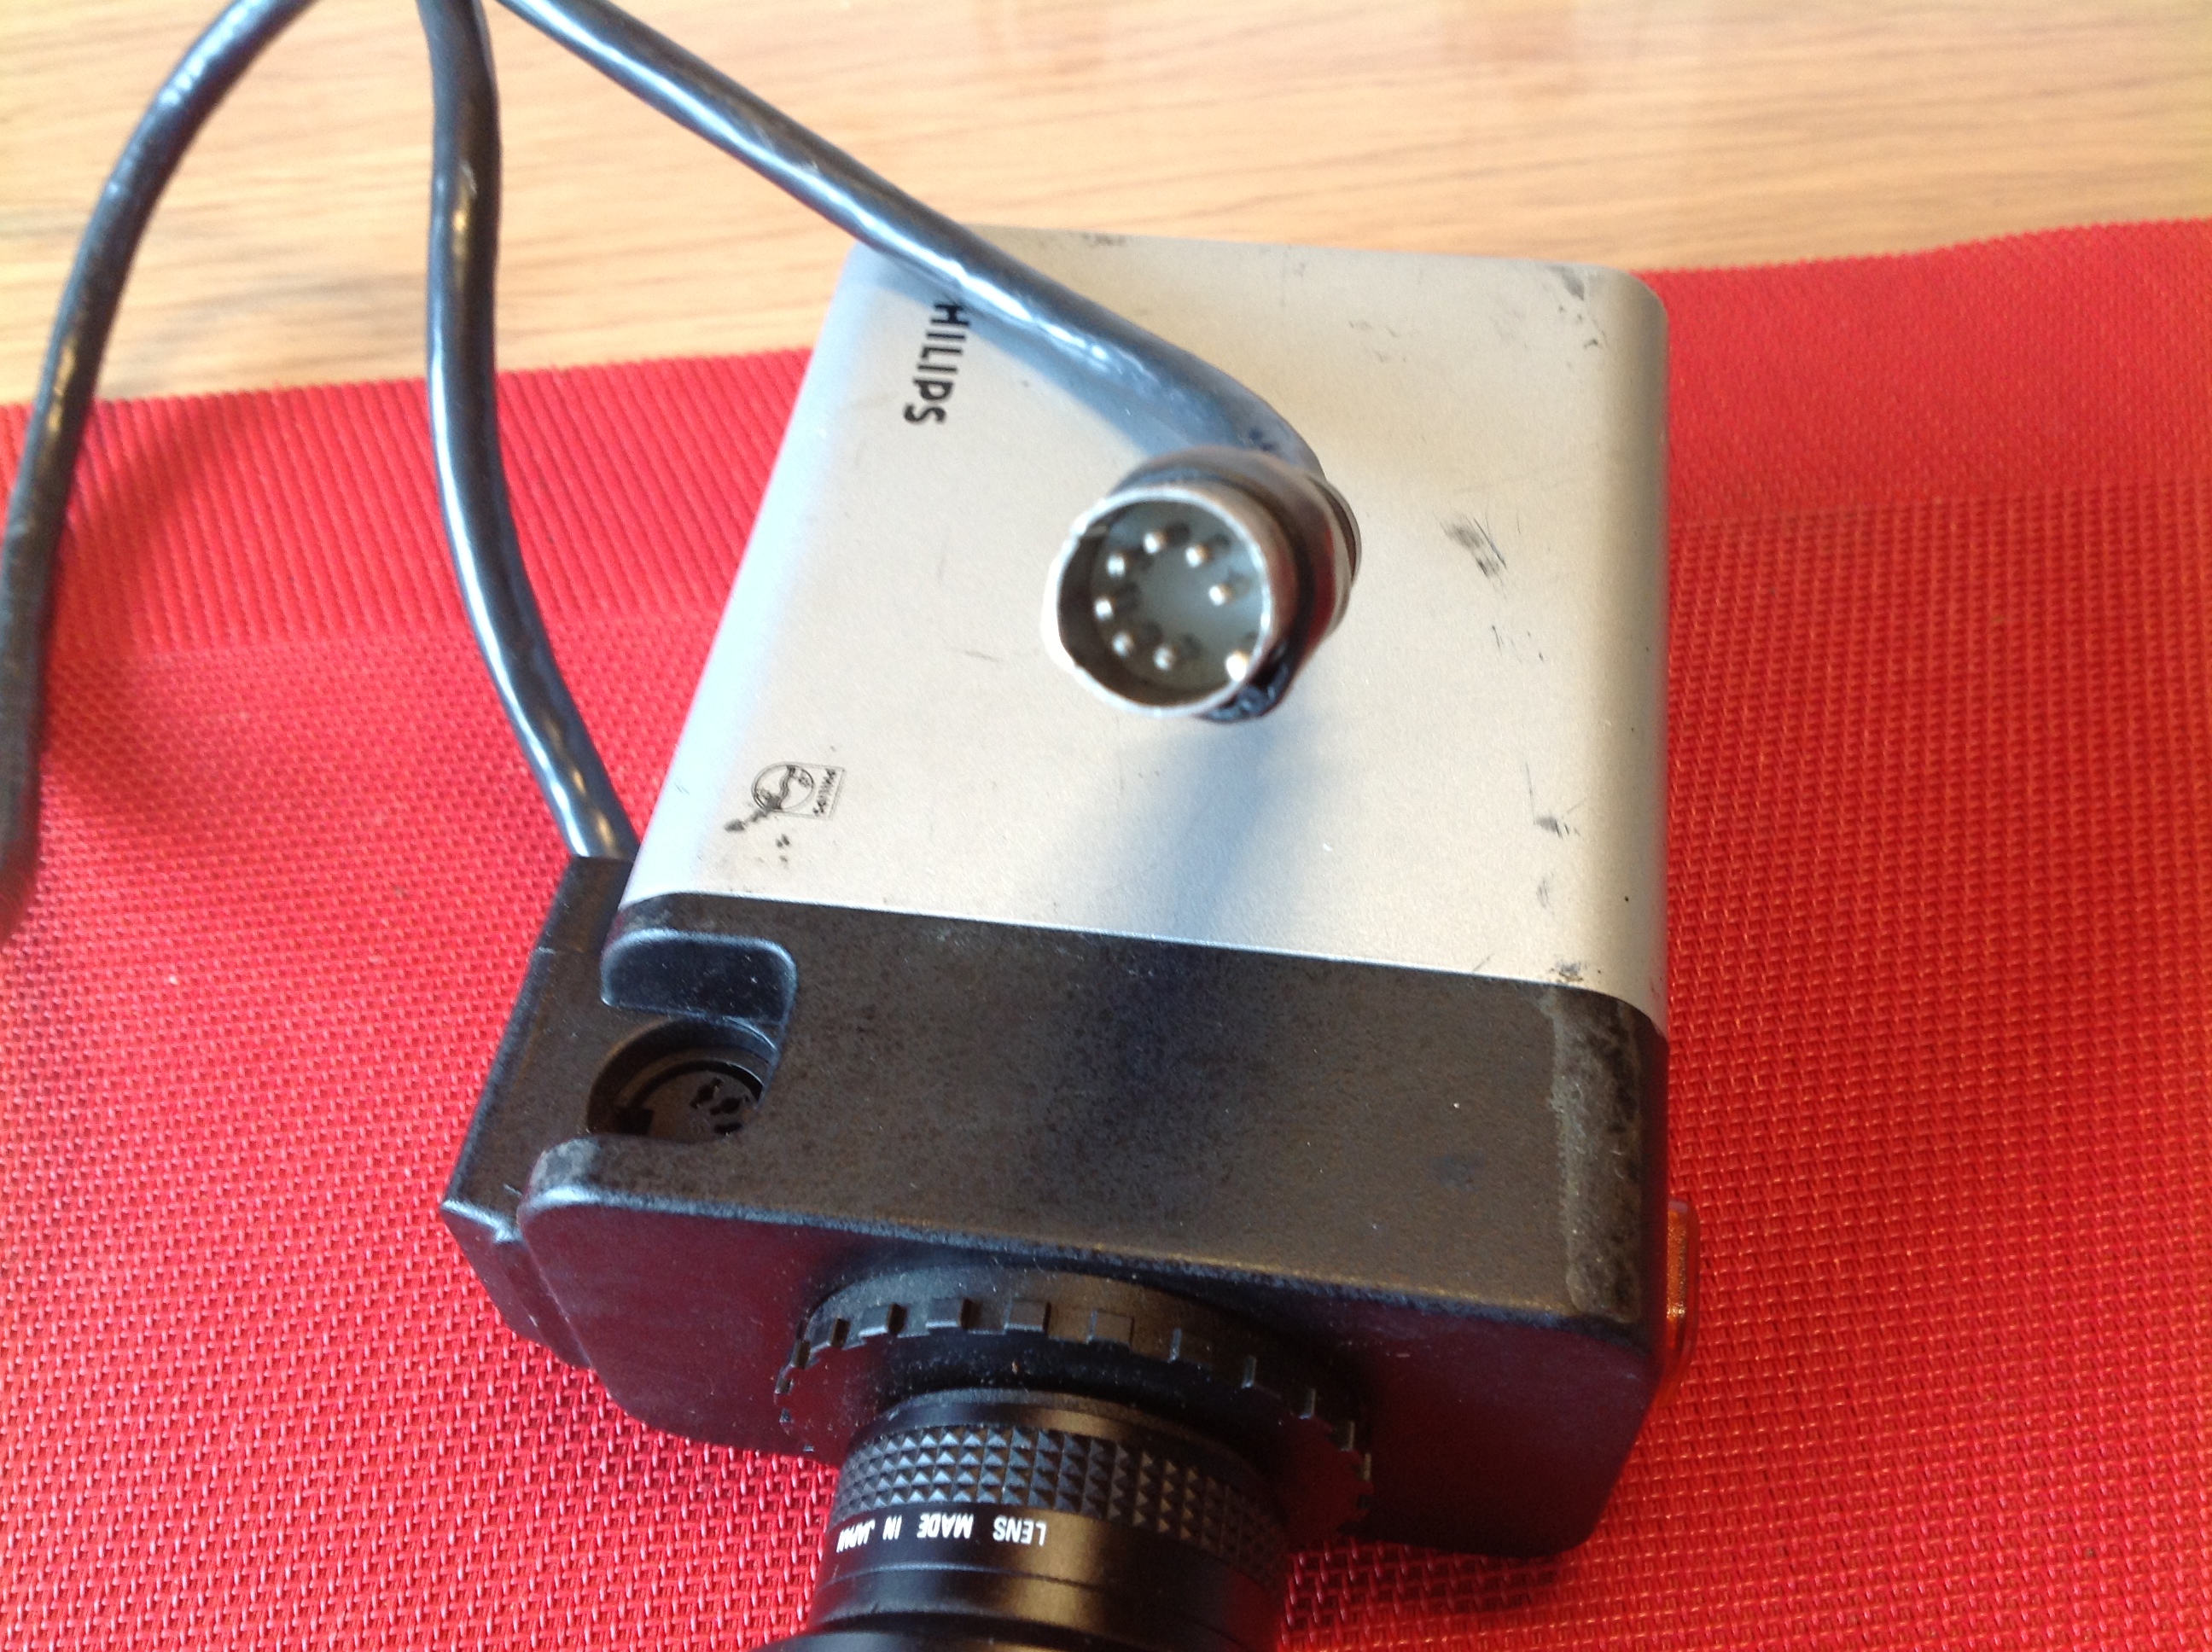 Kamera Philips Cosmicar Mini-TV Lens 1:1,8/4.8 mm